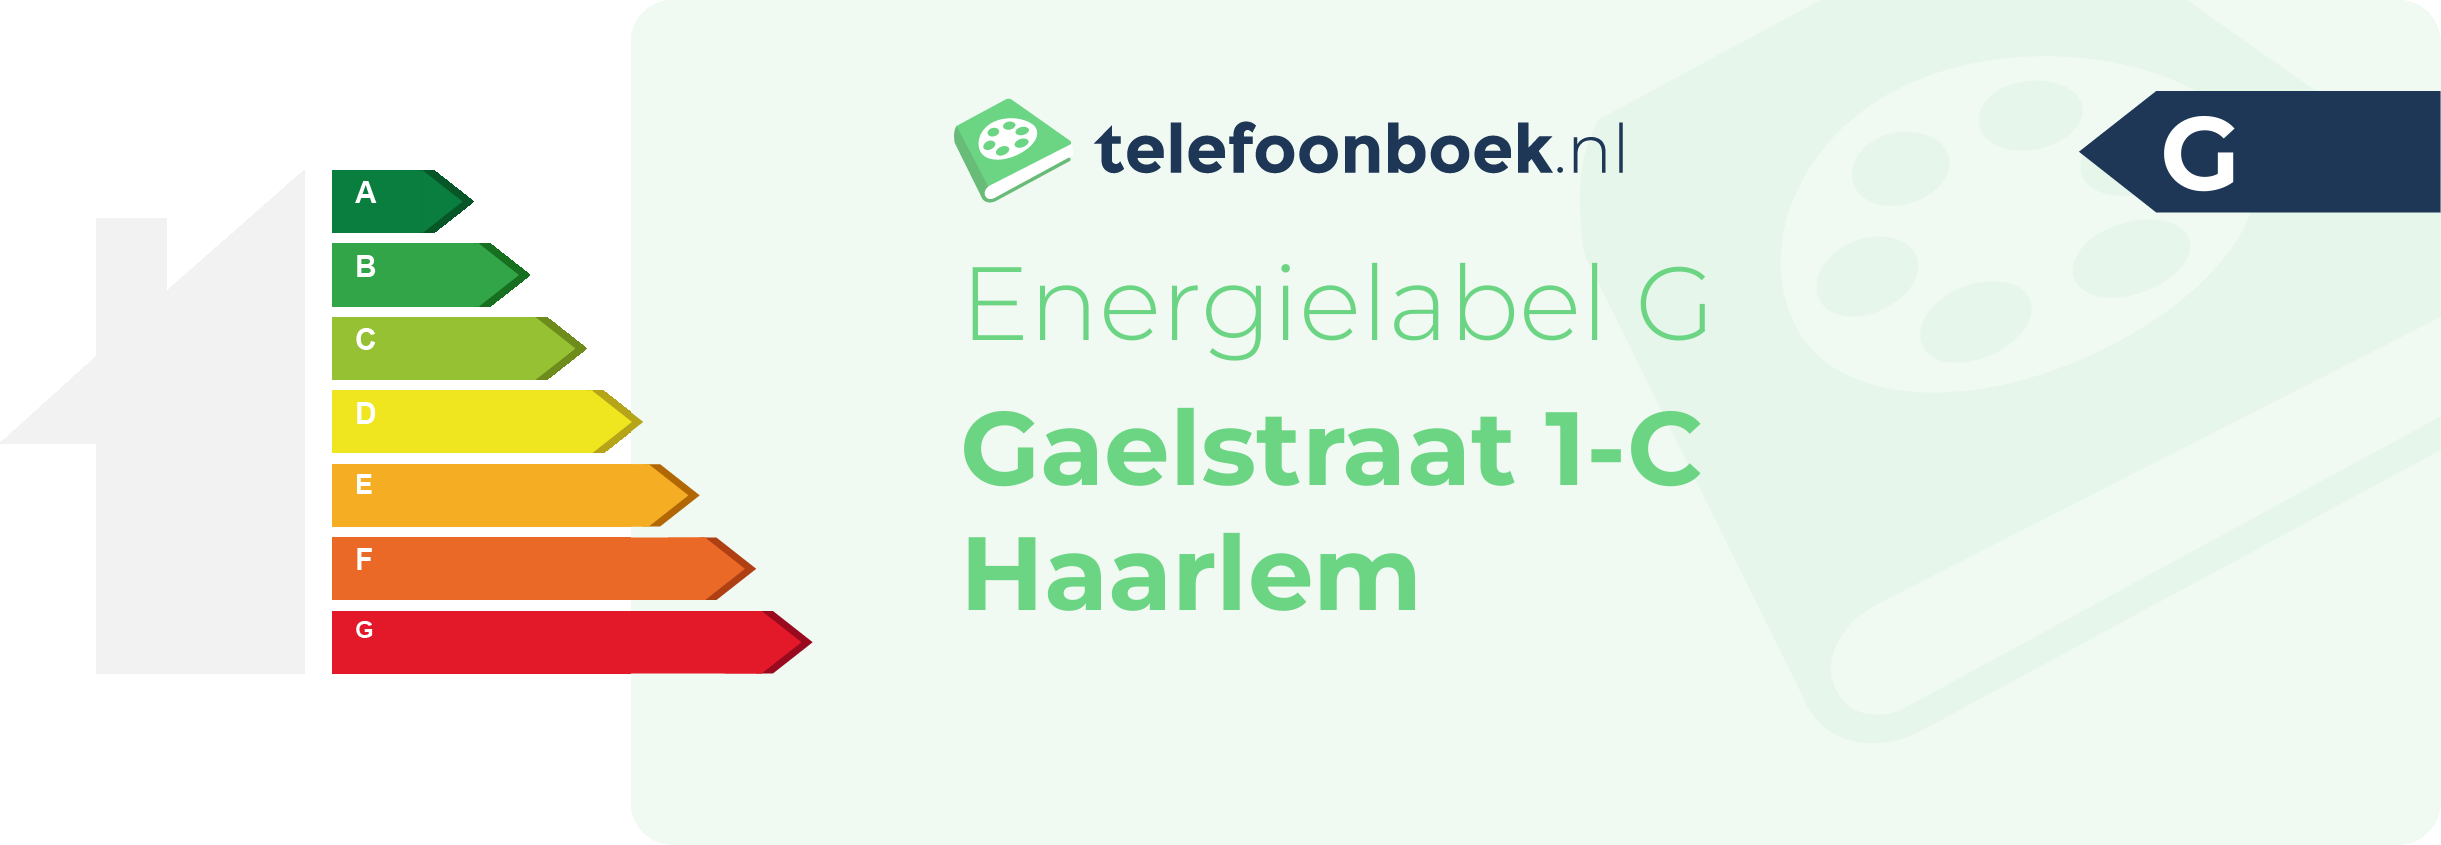 Energielabel Gaelstraat 1-C Haarlem